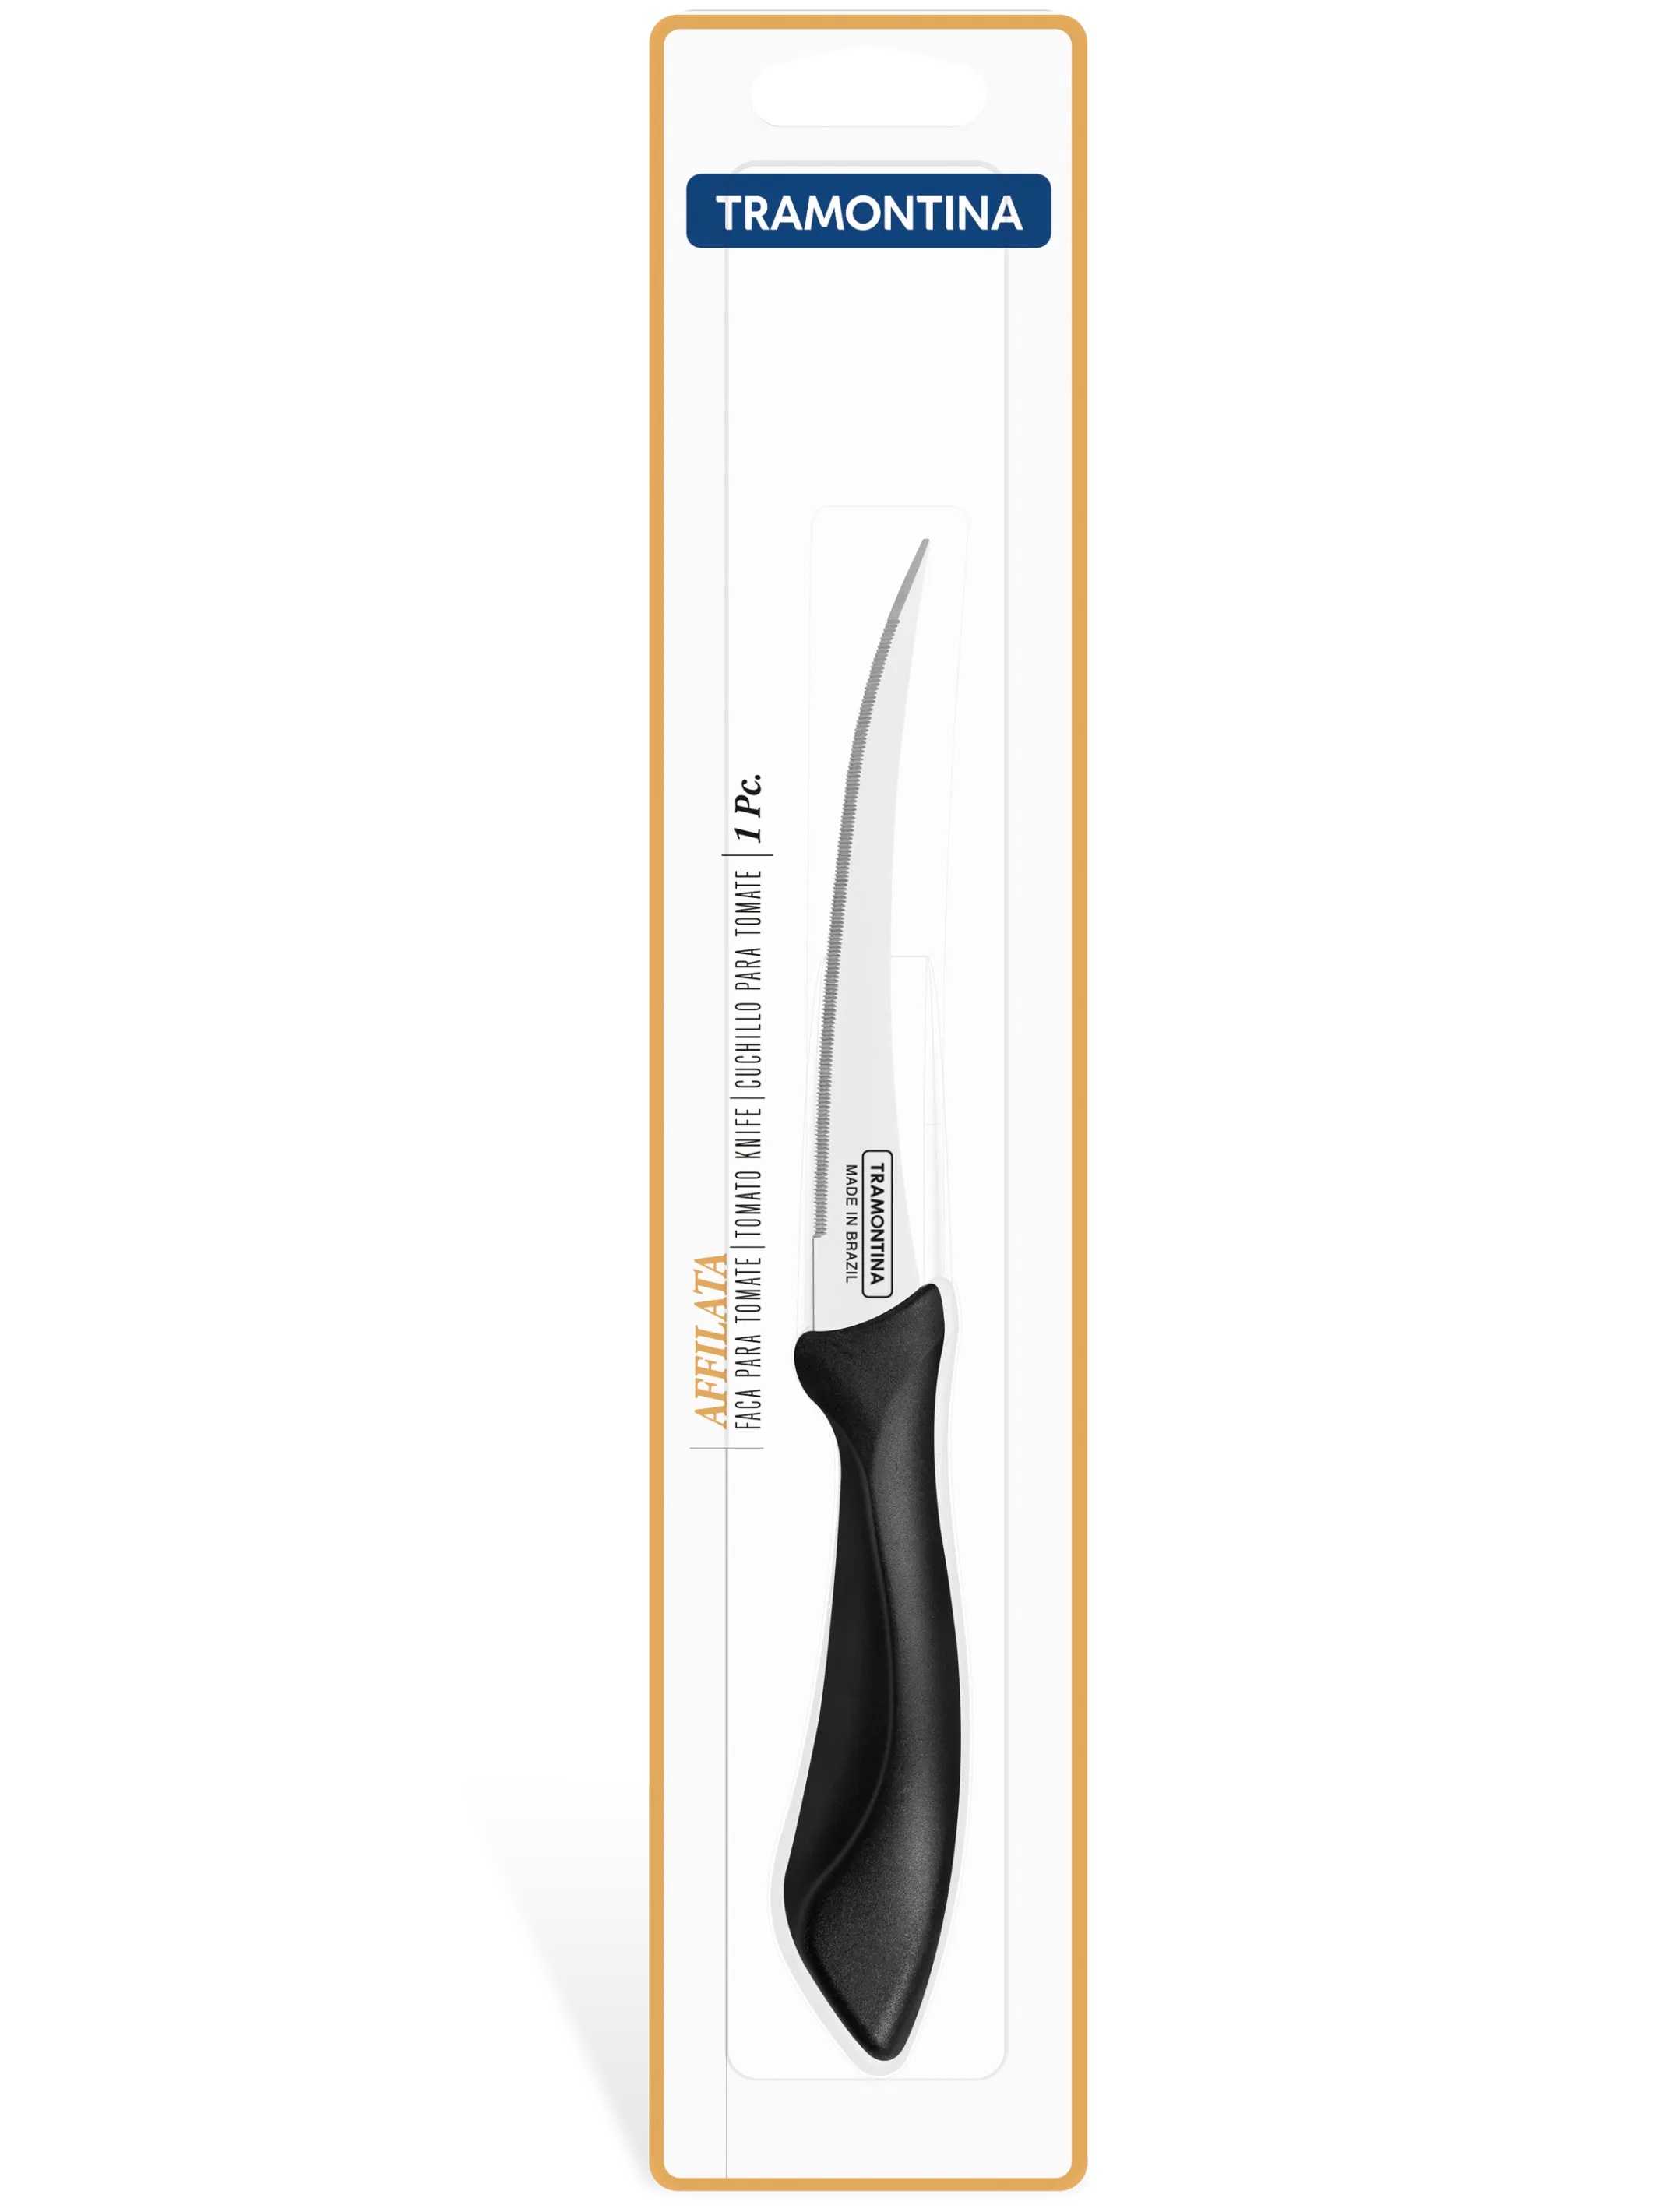 Tramontina 23657105 Affilata paradicsom szeletelő kés